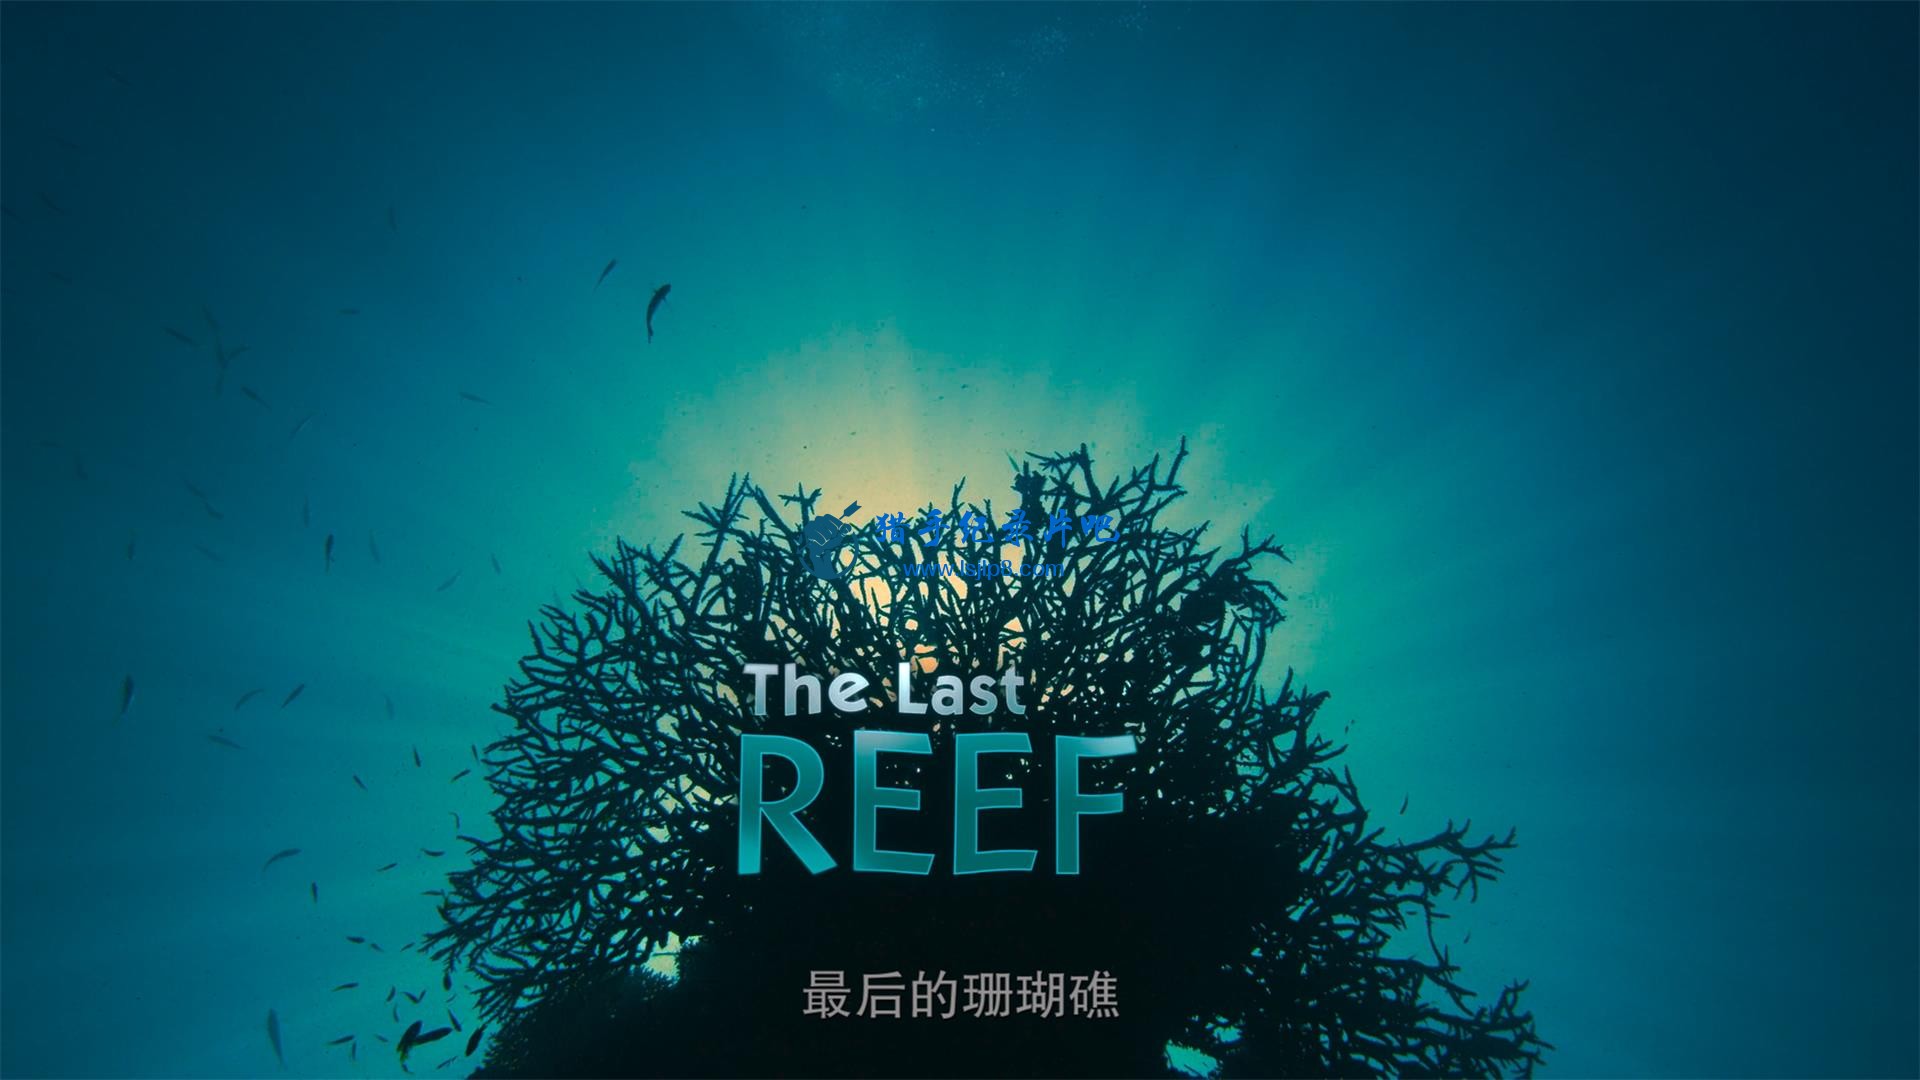 The.Last.Reef.2012.2160p.UHD.BluRay.x265-WhiteRhino.mkv_20200707_140543.336(1).jpg